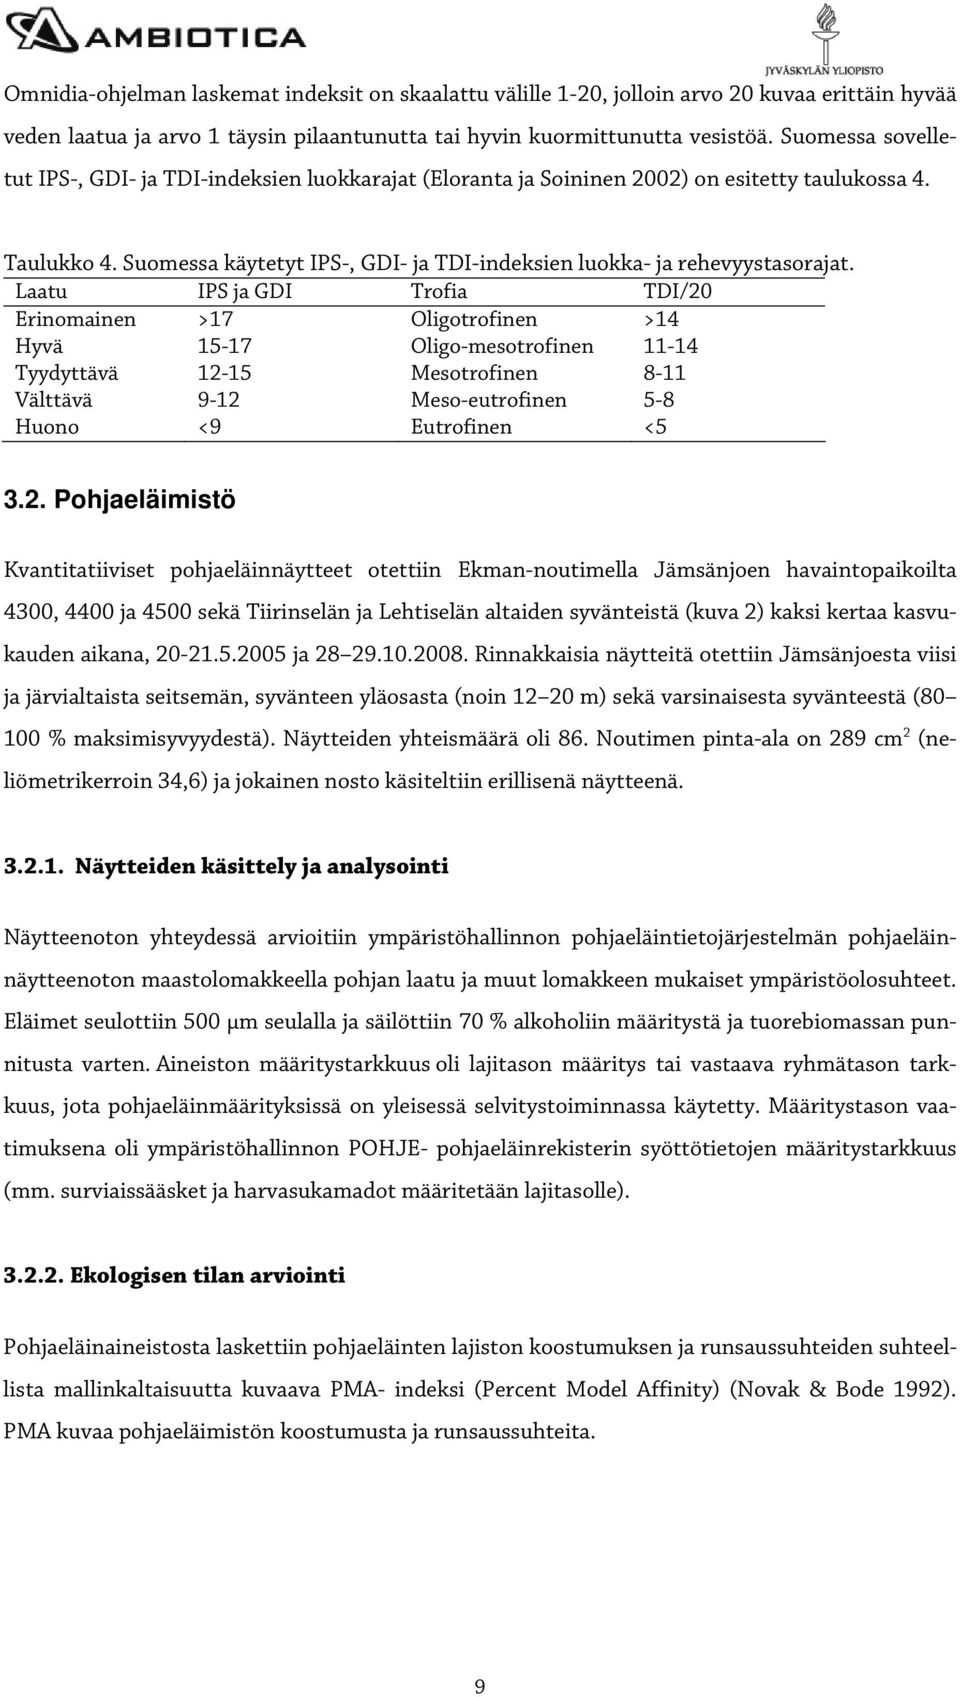 Suomessa käytetyt IPS-, GDI- ja TDI-indeksien luokka- ja rehevyystasorajat.